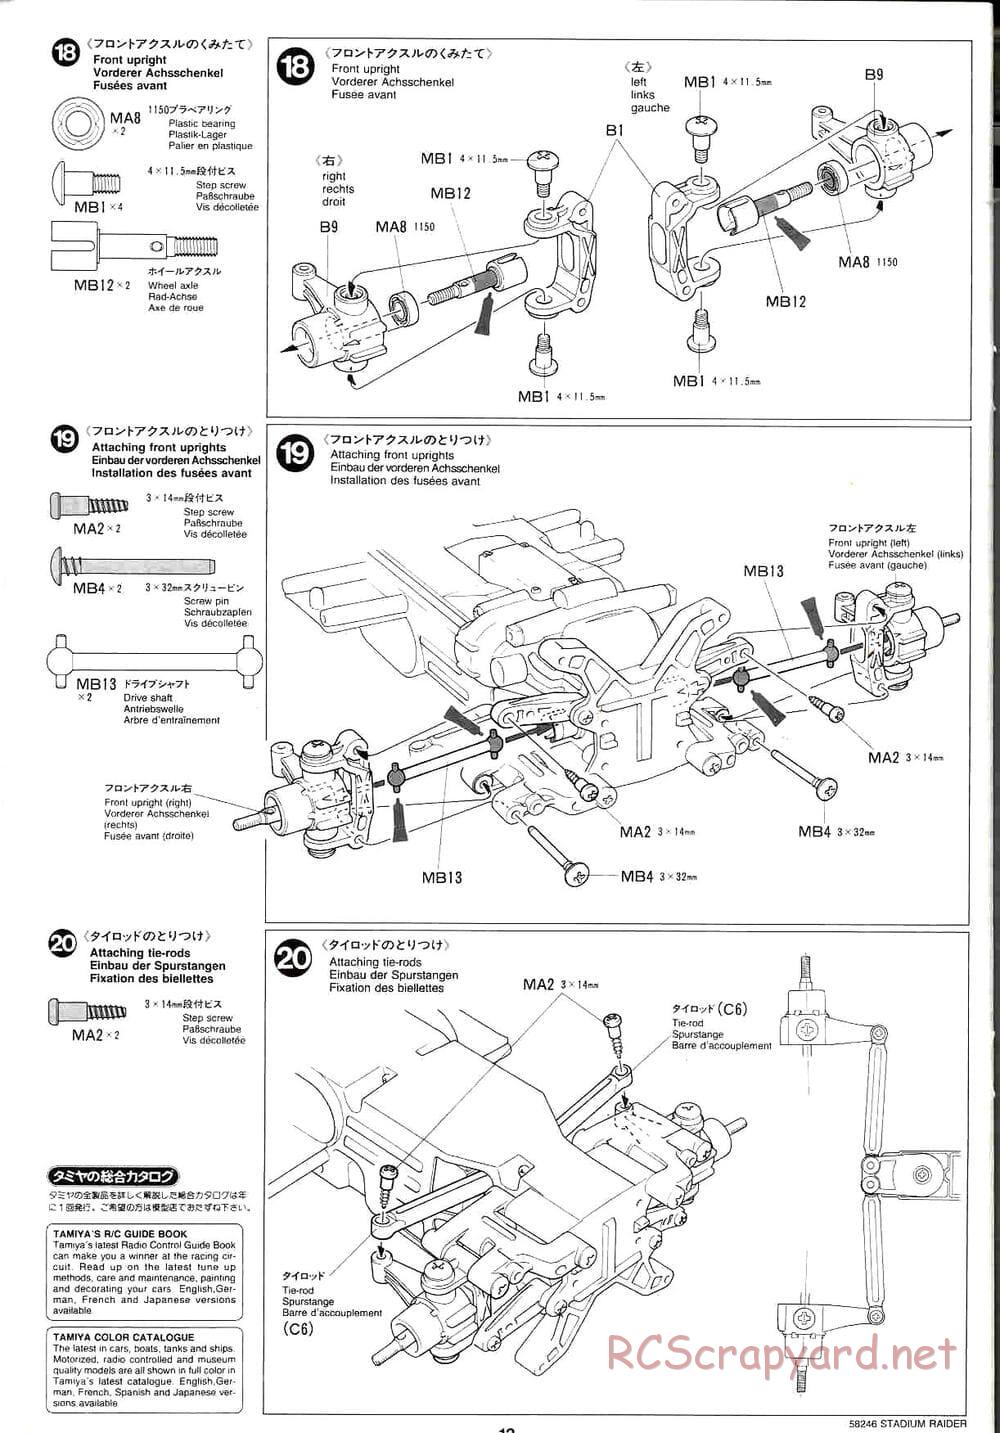 Tamiya - Stadium Raider - TL-01 Chassis - Manual - Page 12